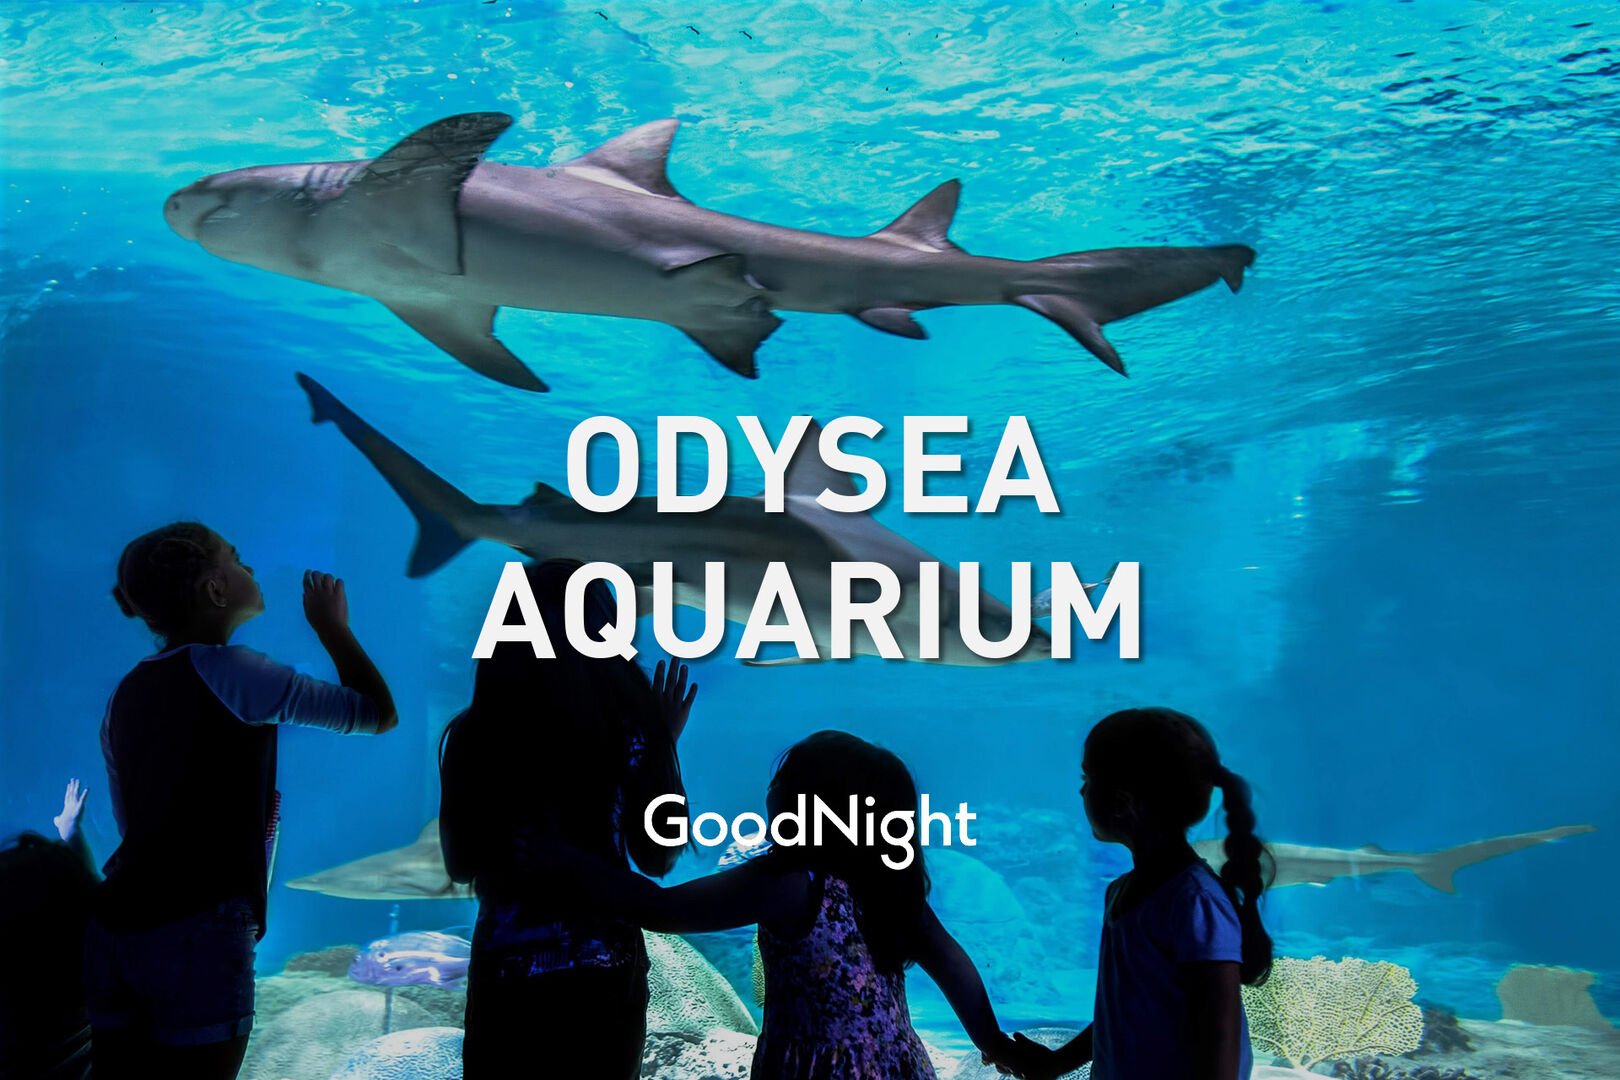 22 minutes to Odysea Aquarium